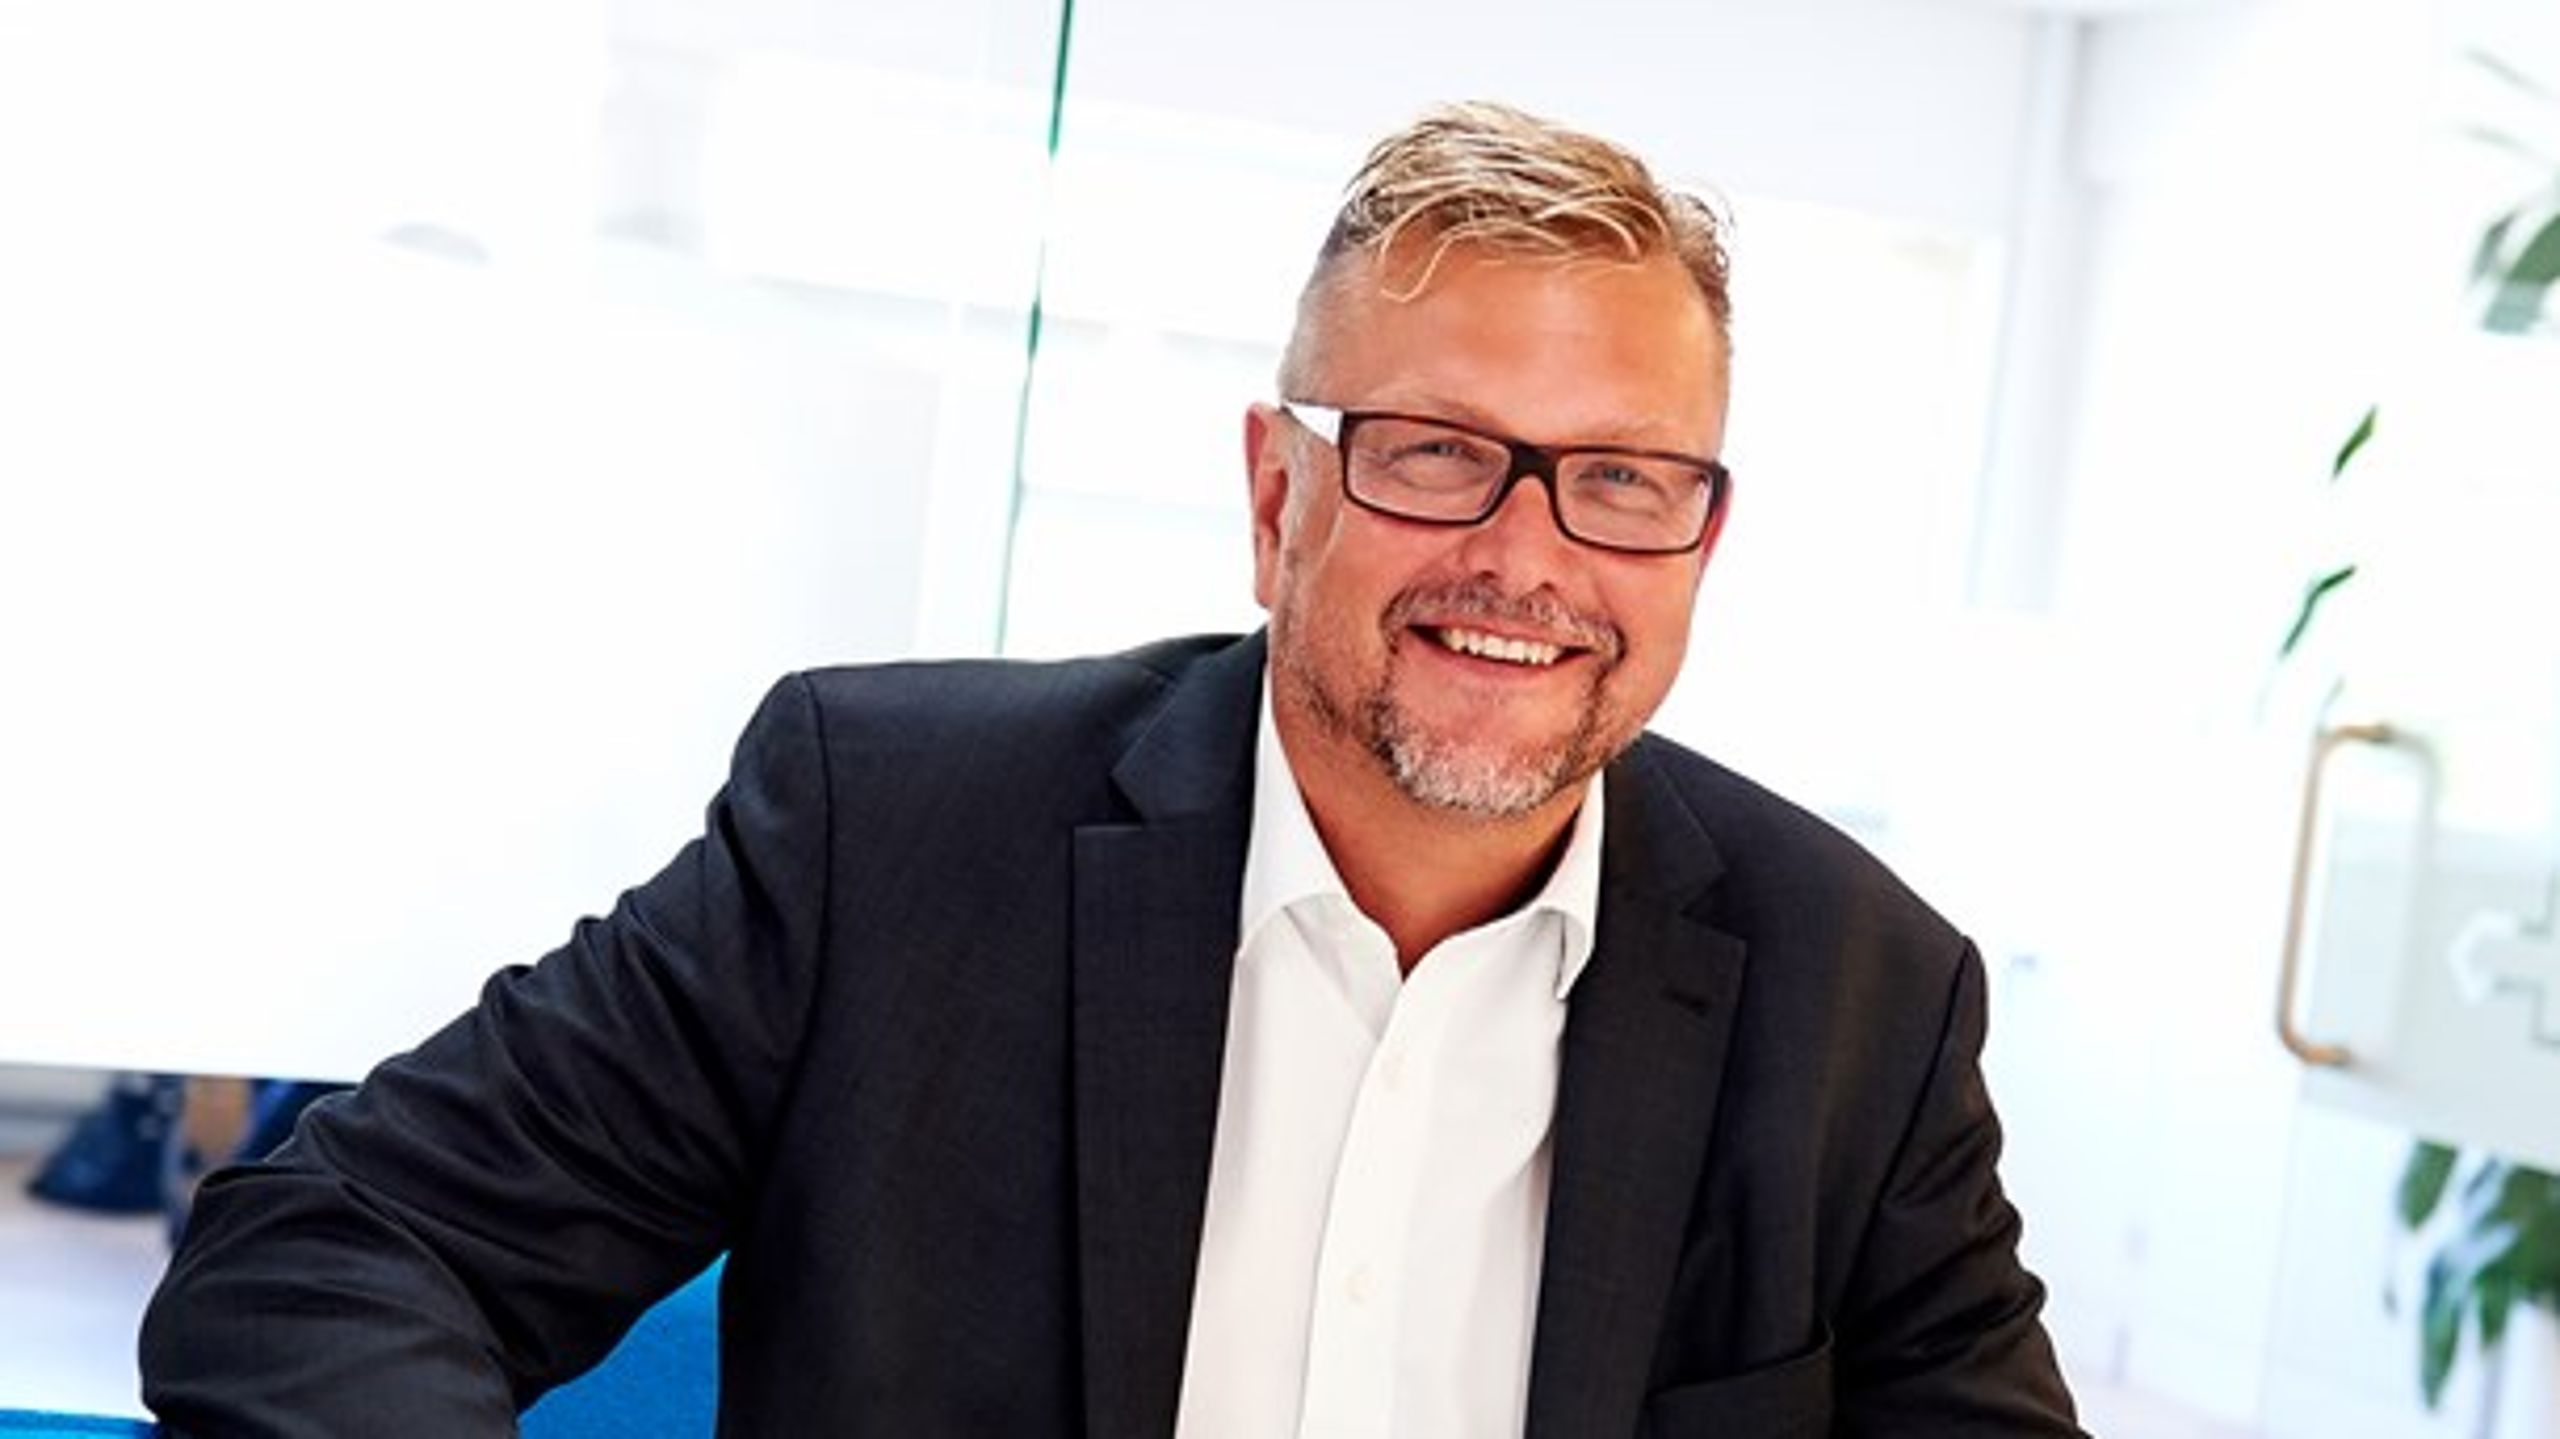 Allan Weirup er med øjeblikkelig virkning fyret som direktør for Danske Vandværker. Den nye ledelse er tavs om årsagen.